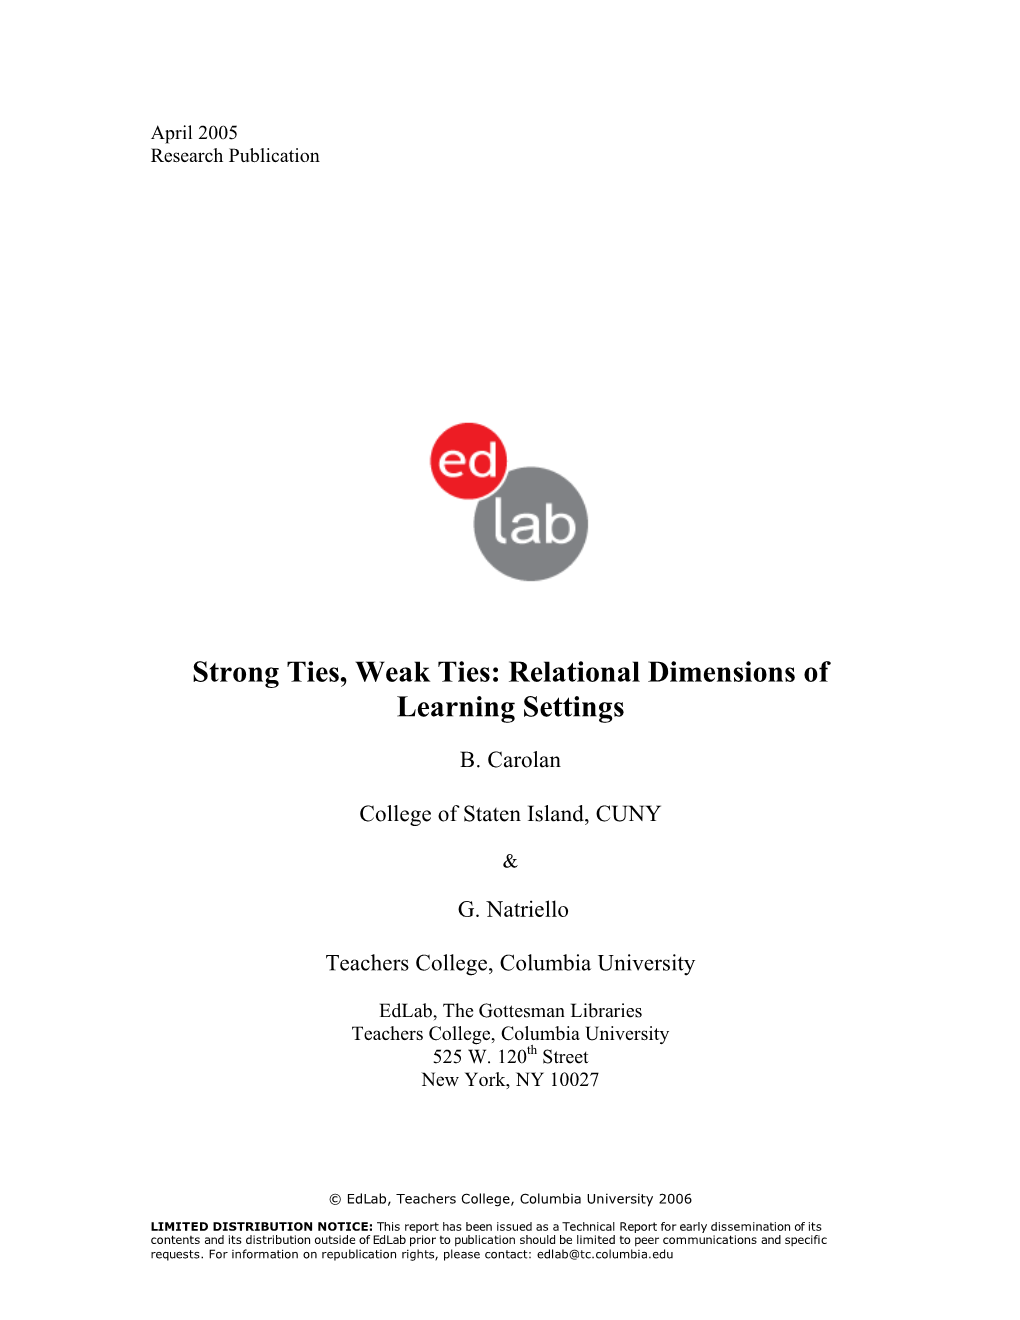 Strong Ties, Weak Ties: Relational Dimensions of Learning Settings